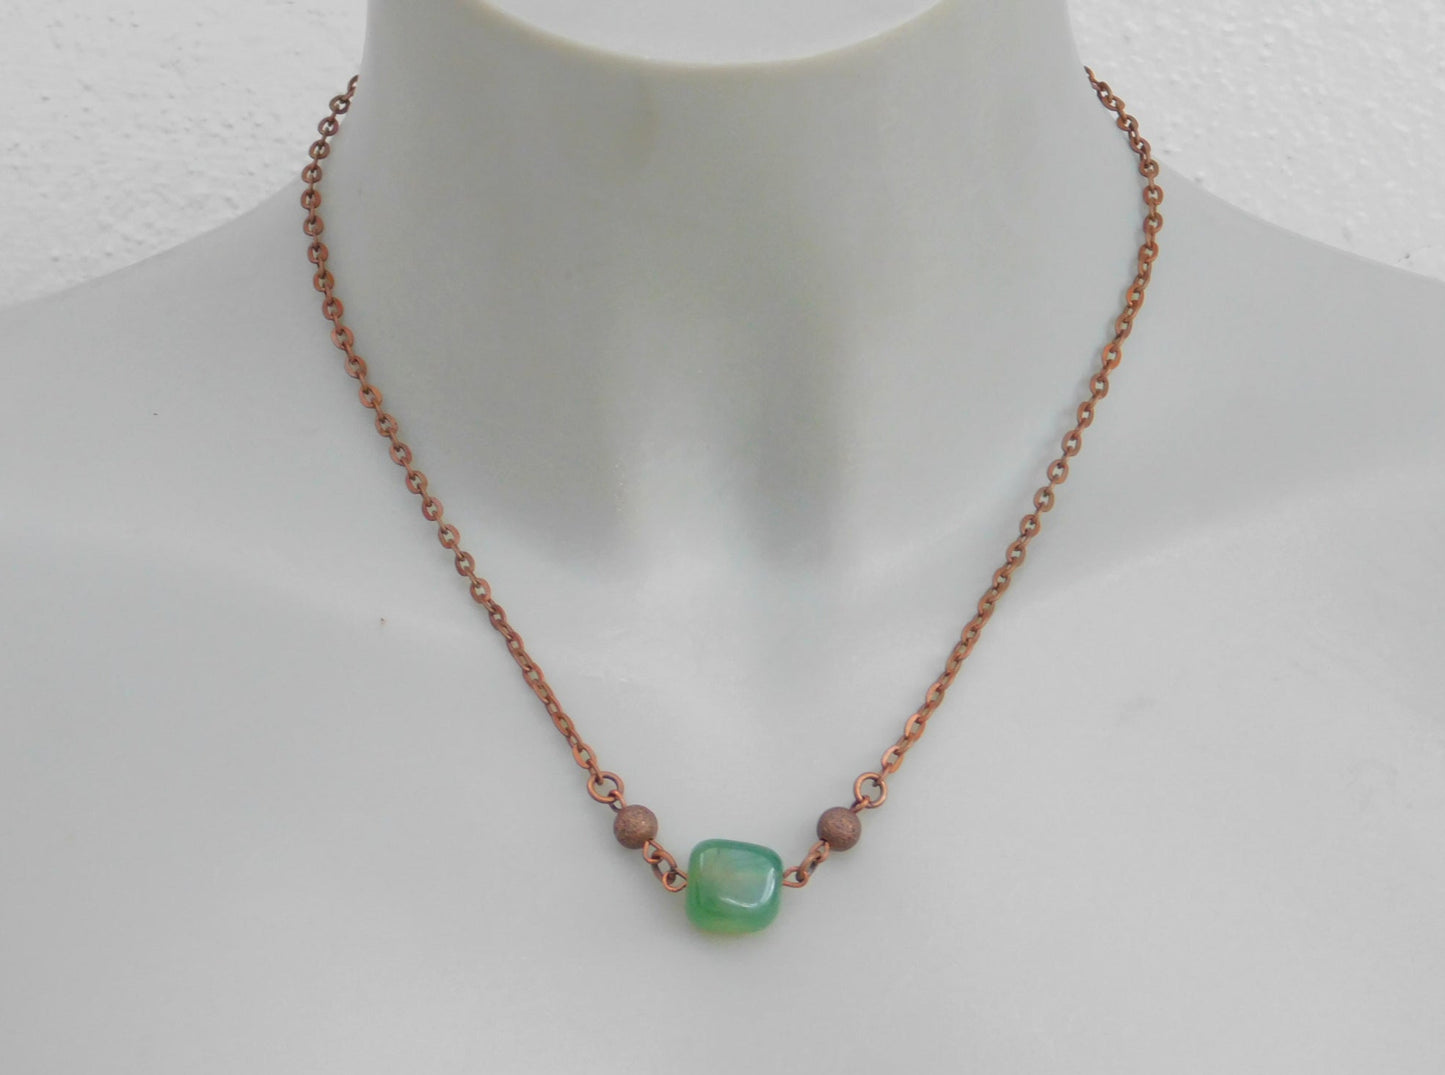 Eine kurze kupferfarbene Halskette mit einem grünen Achat